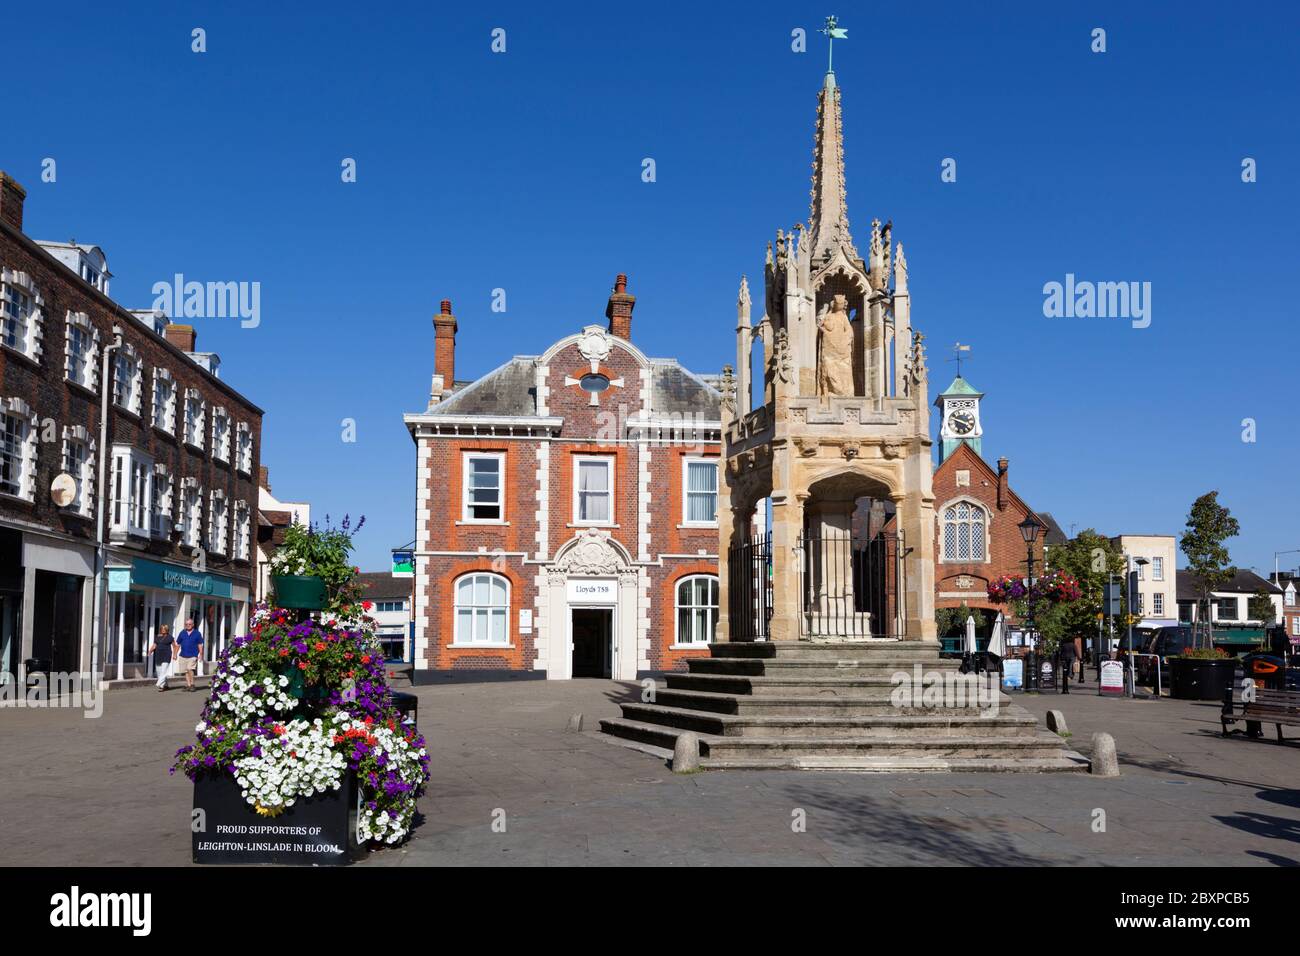 Leighton Buzzard Market Cross, Leighton Buzzard, Bedfordshire, England, United Kingdom, Europe Stock Photo